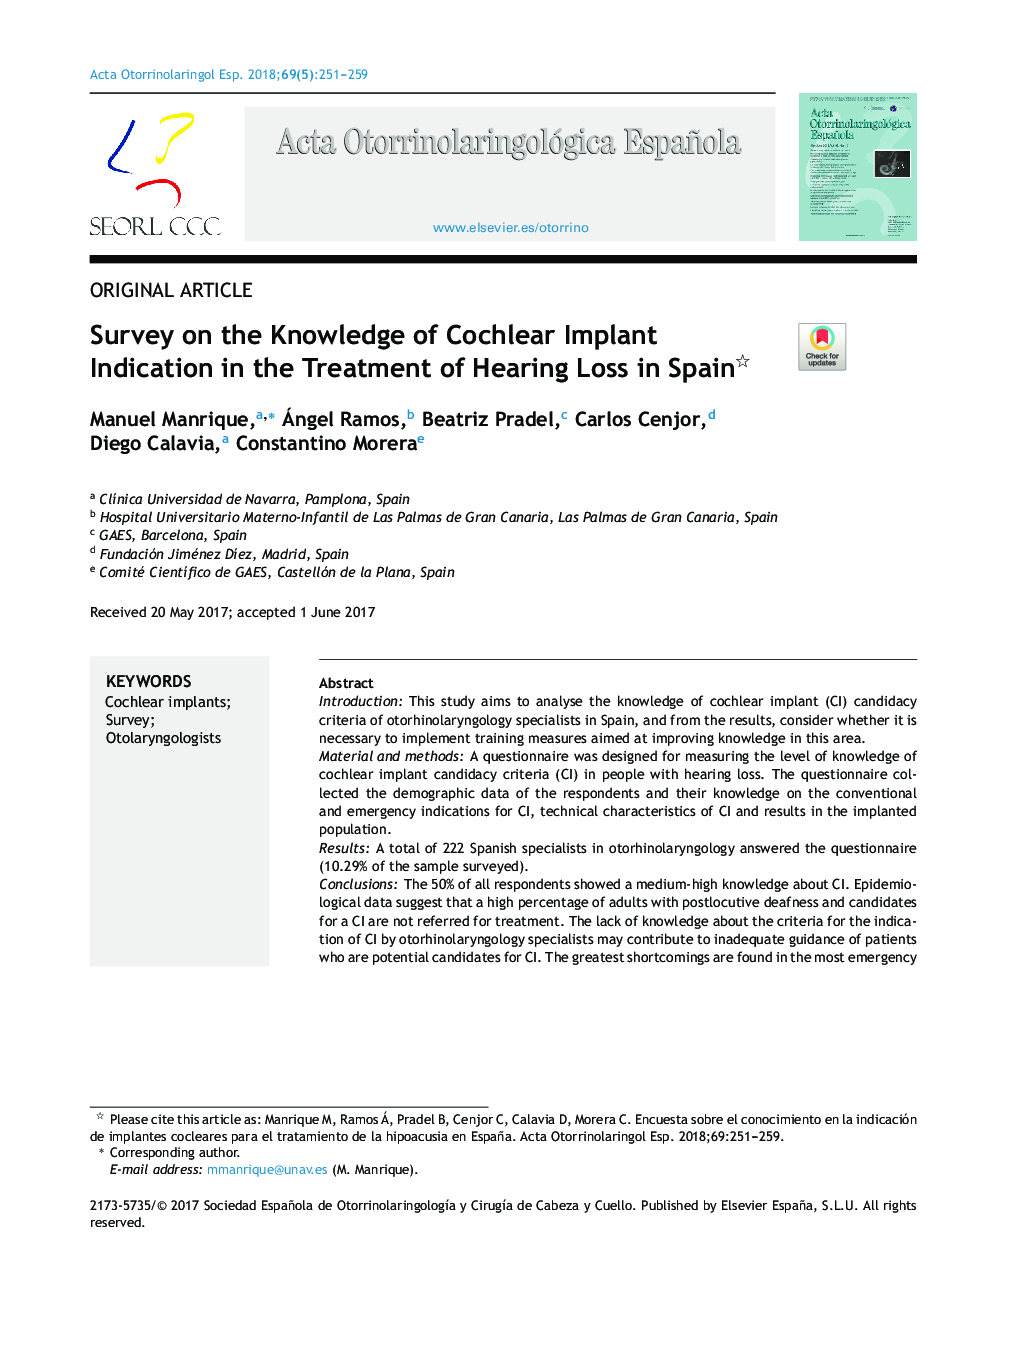 بررسی آگاهی از علائم ایمپلنت کچلی در درمان افت شنوایی در اسپانیا